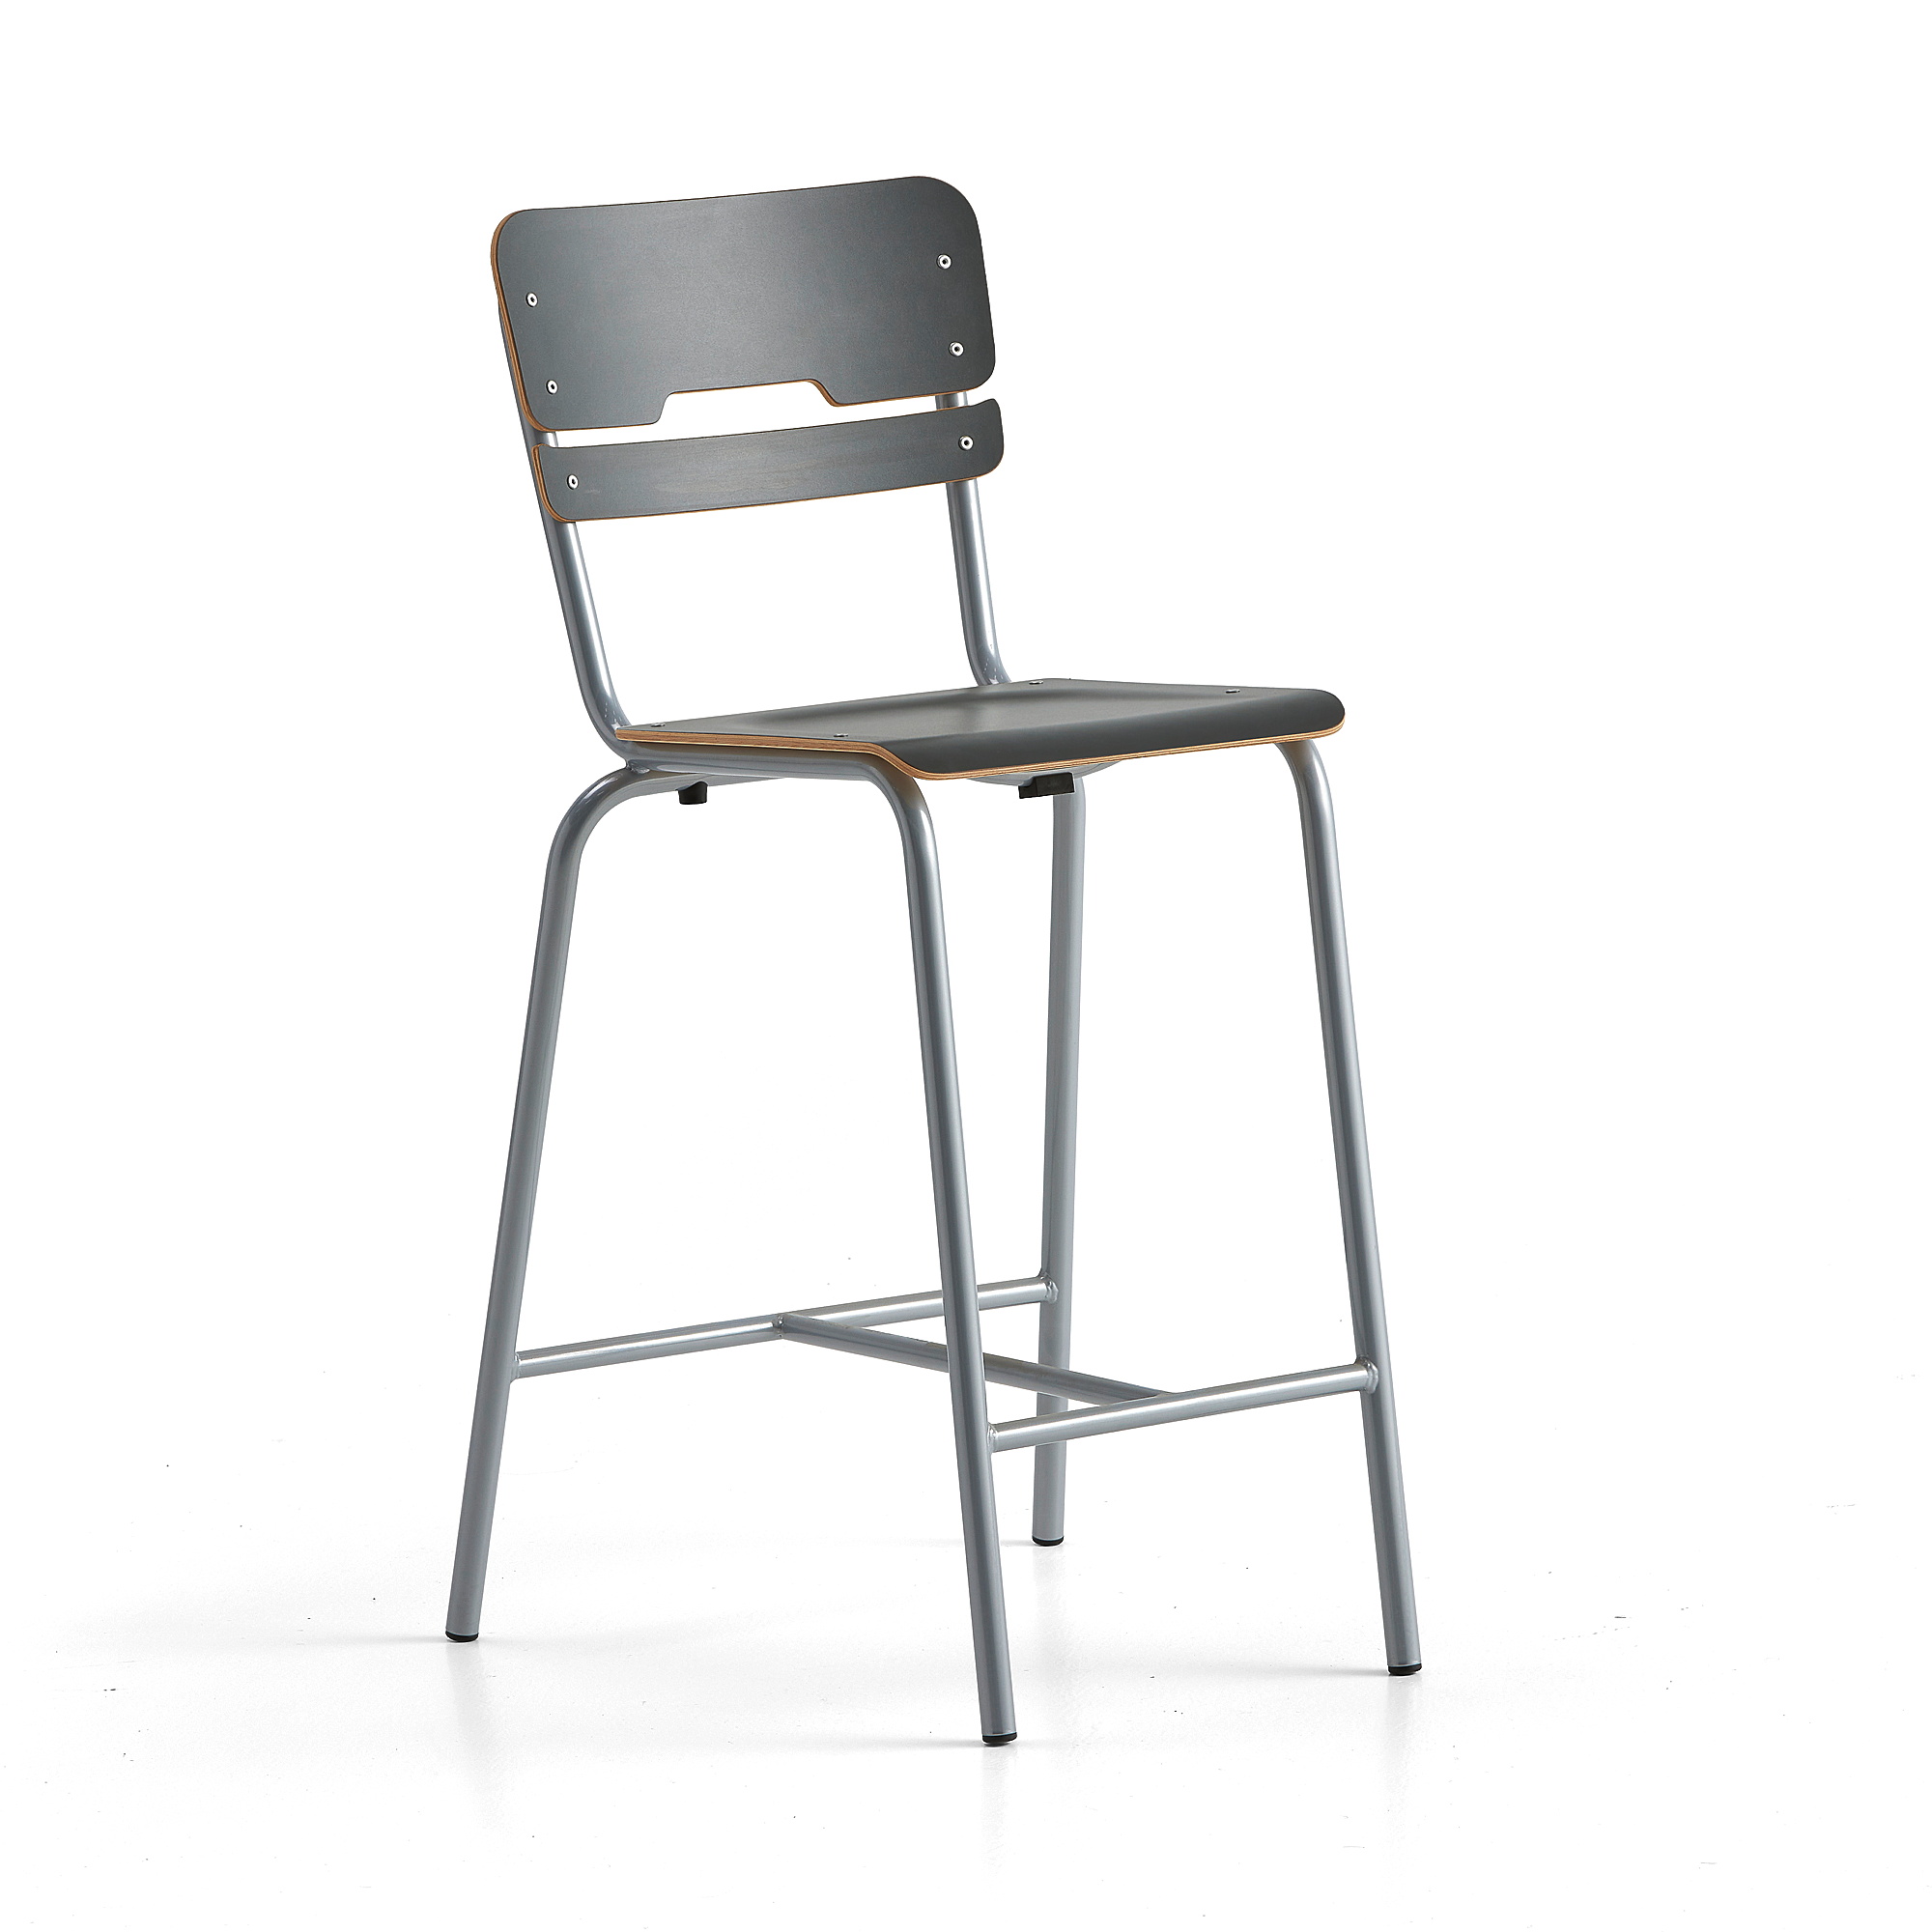 Školní židle SCIENTIA, sedák 360x360 mm, výška 650 mm, stříbrná/antracitová